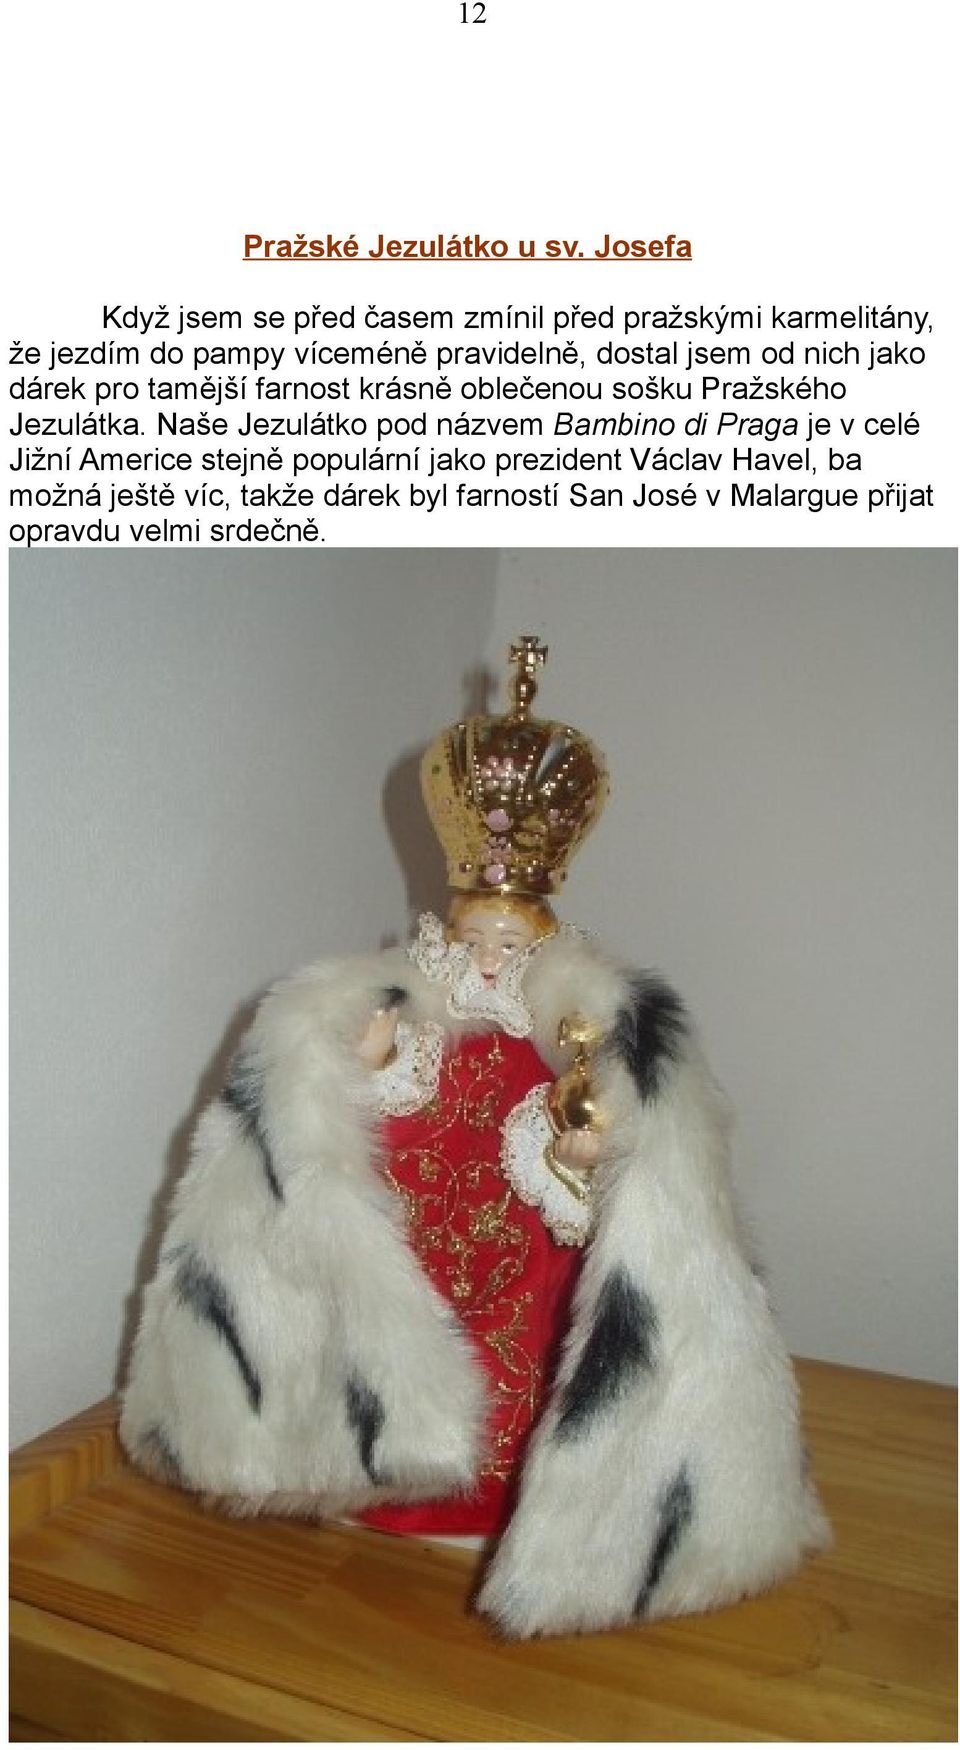 dostal jsem od nich jako dárek pro tamější farnost krásně oblečenou sošku Pražského Jezulátka.